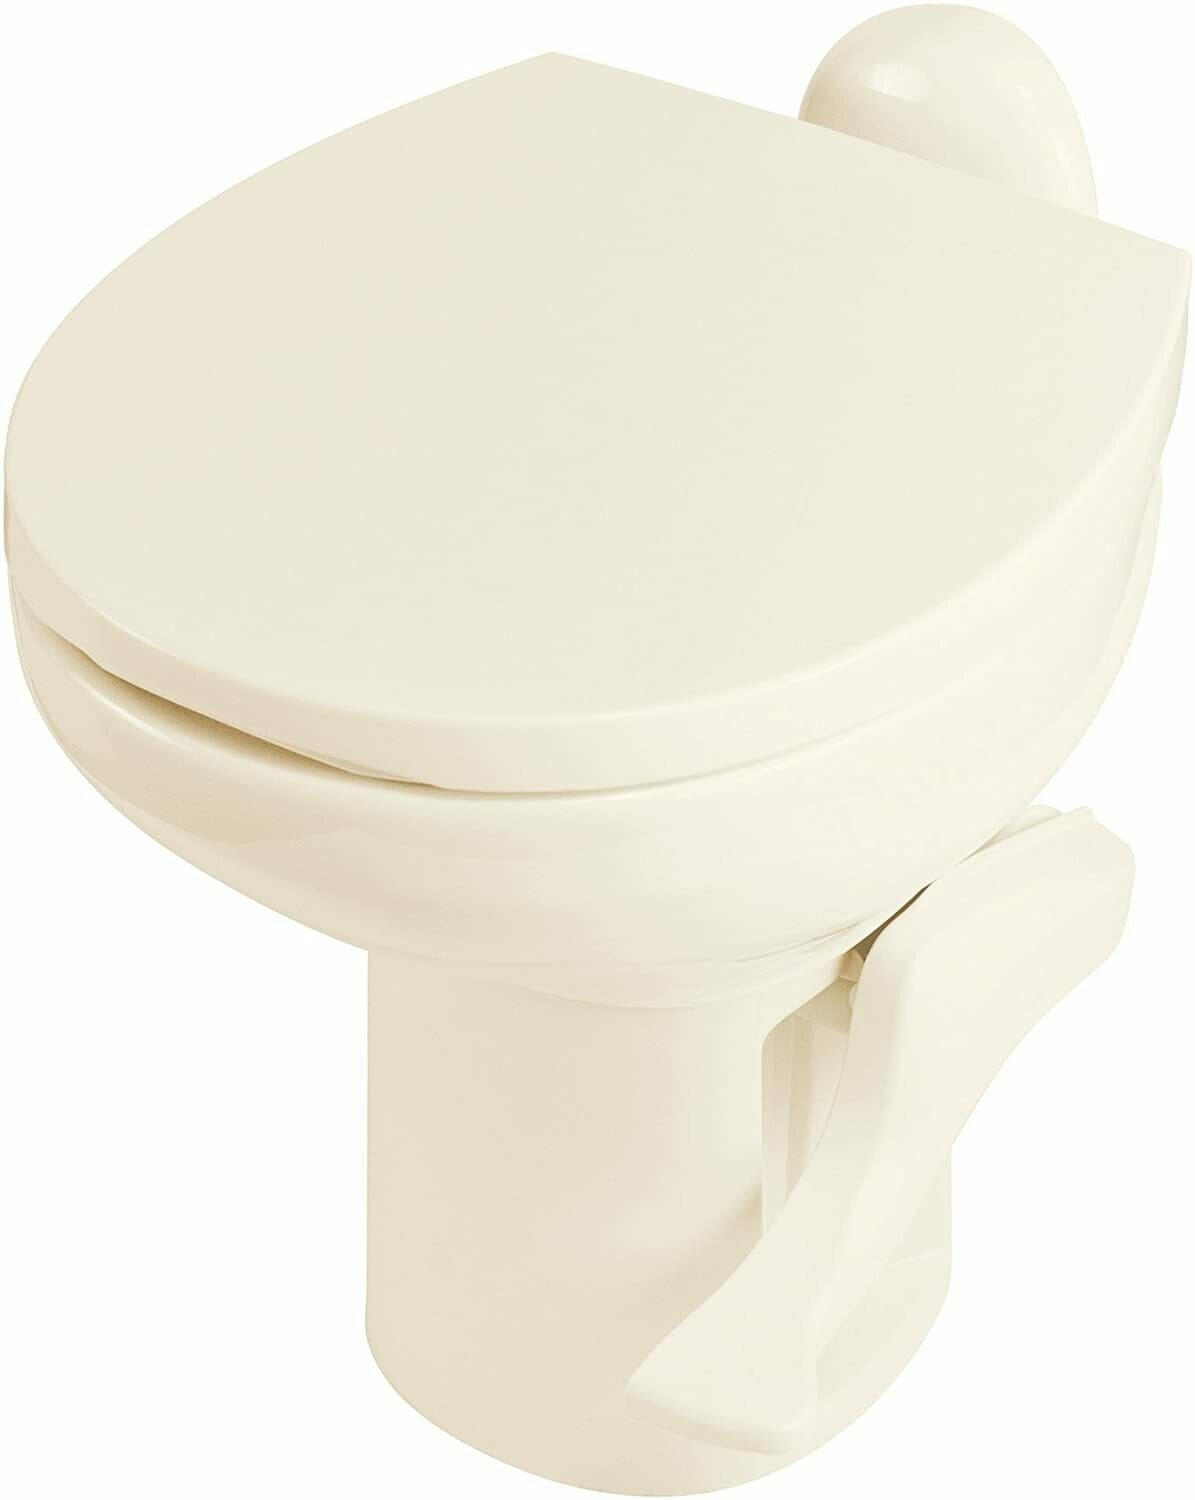 Toilette haute Thetford Style II - Os